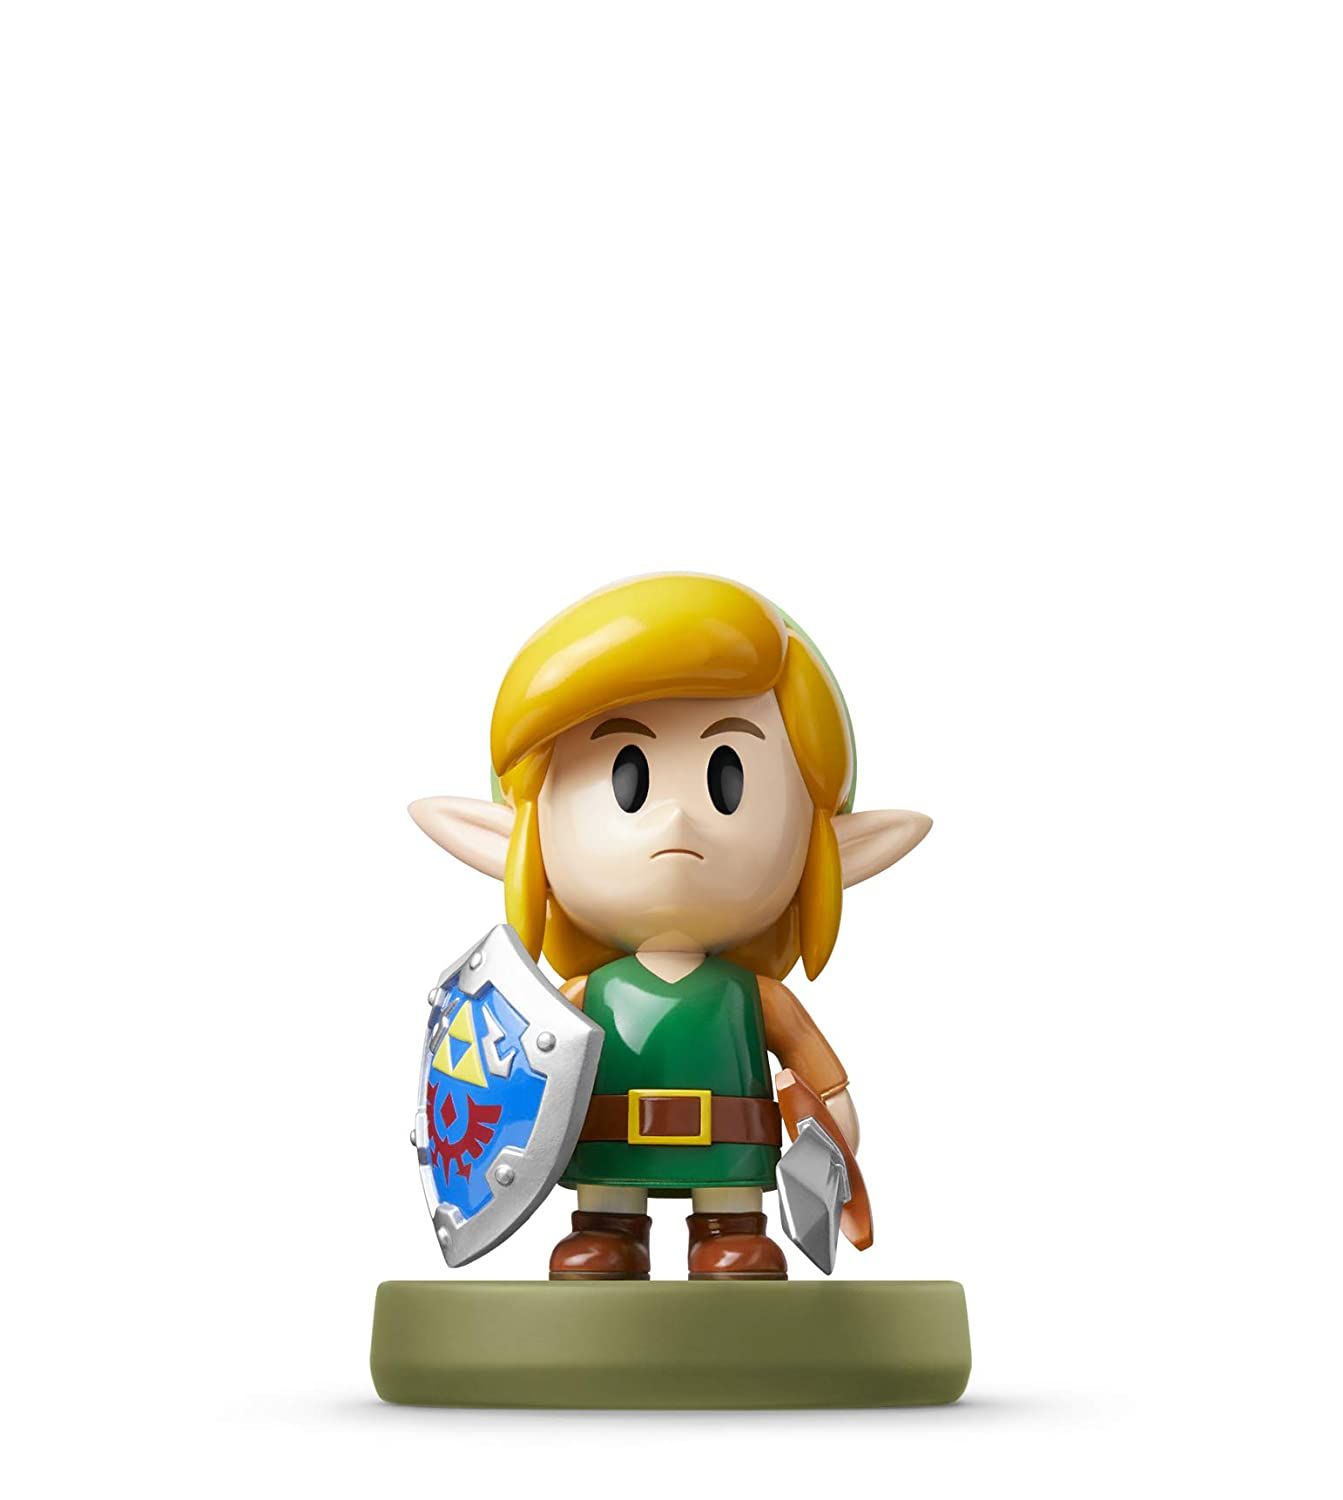 Nintendo Amiibo - Link The Legend of Zelda Link's Awakening Series 2